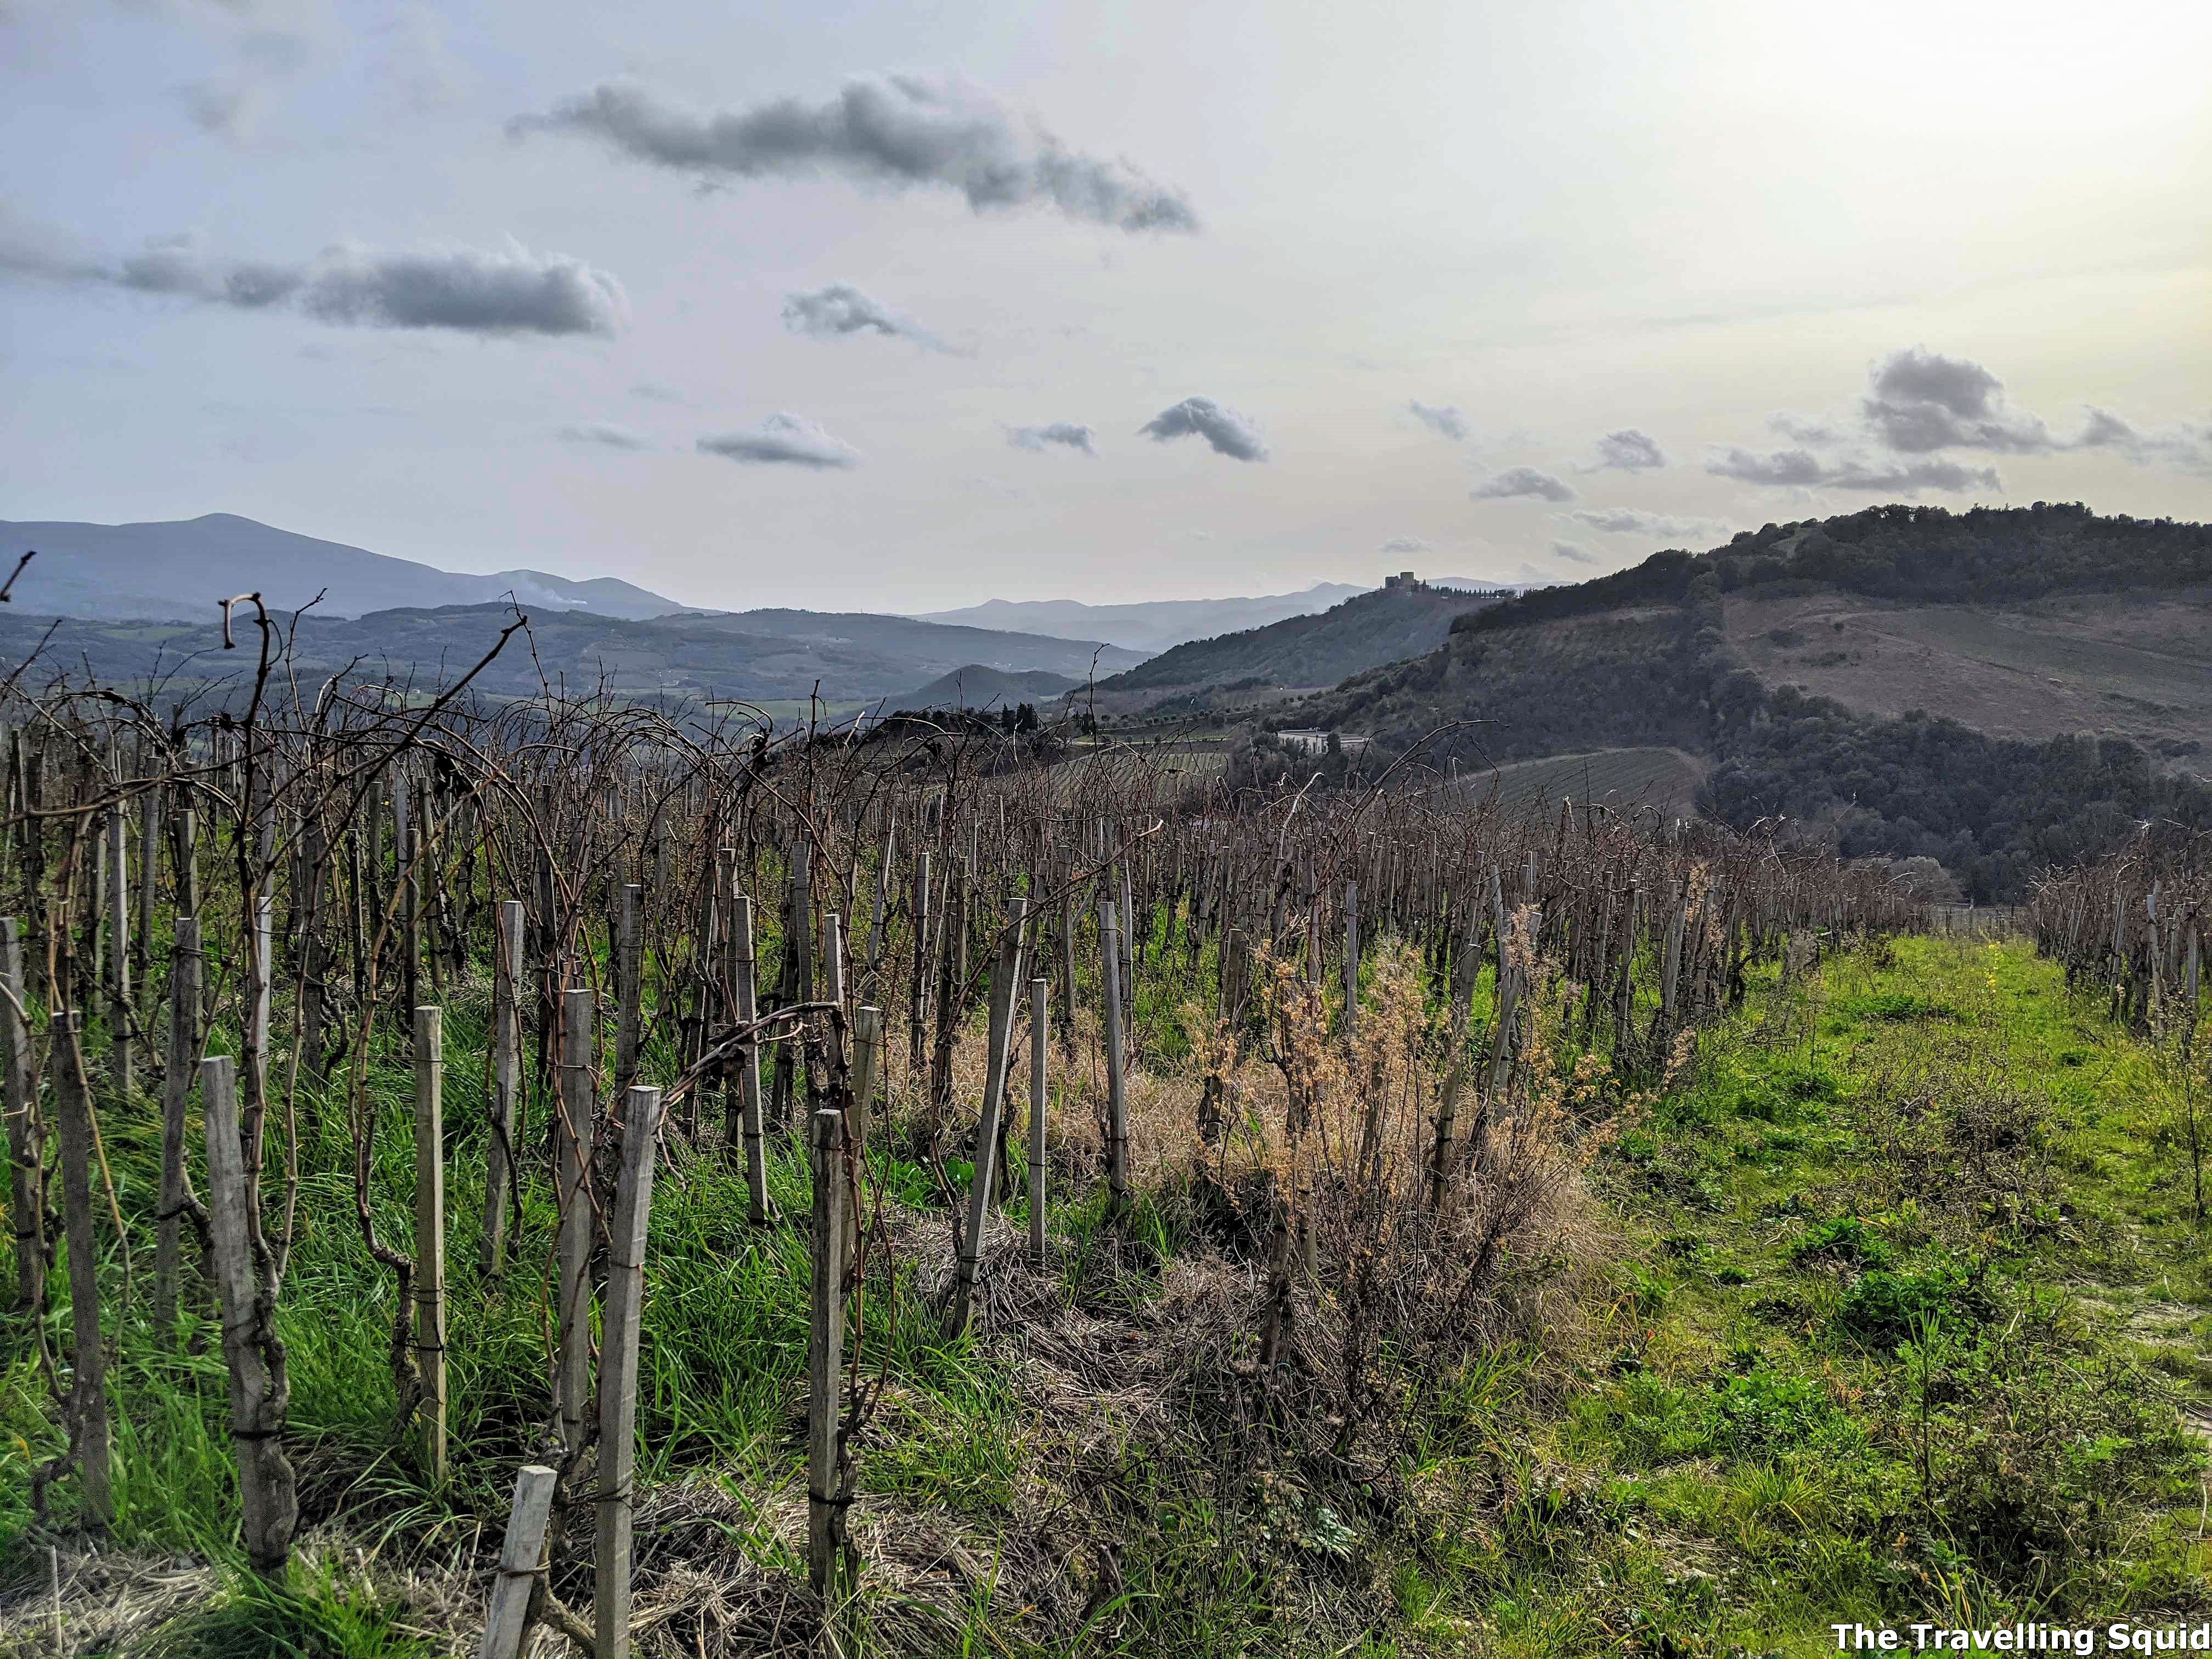 vineyard Podere Le Ripi in Montalcino